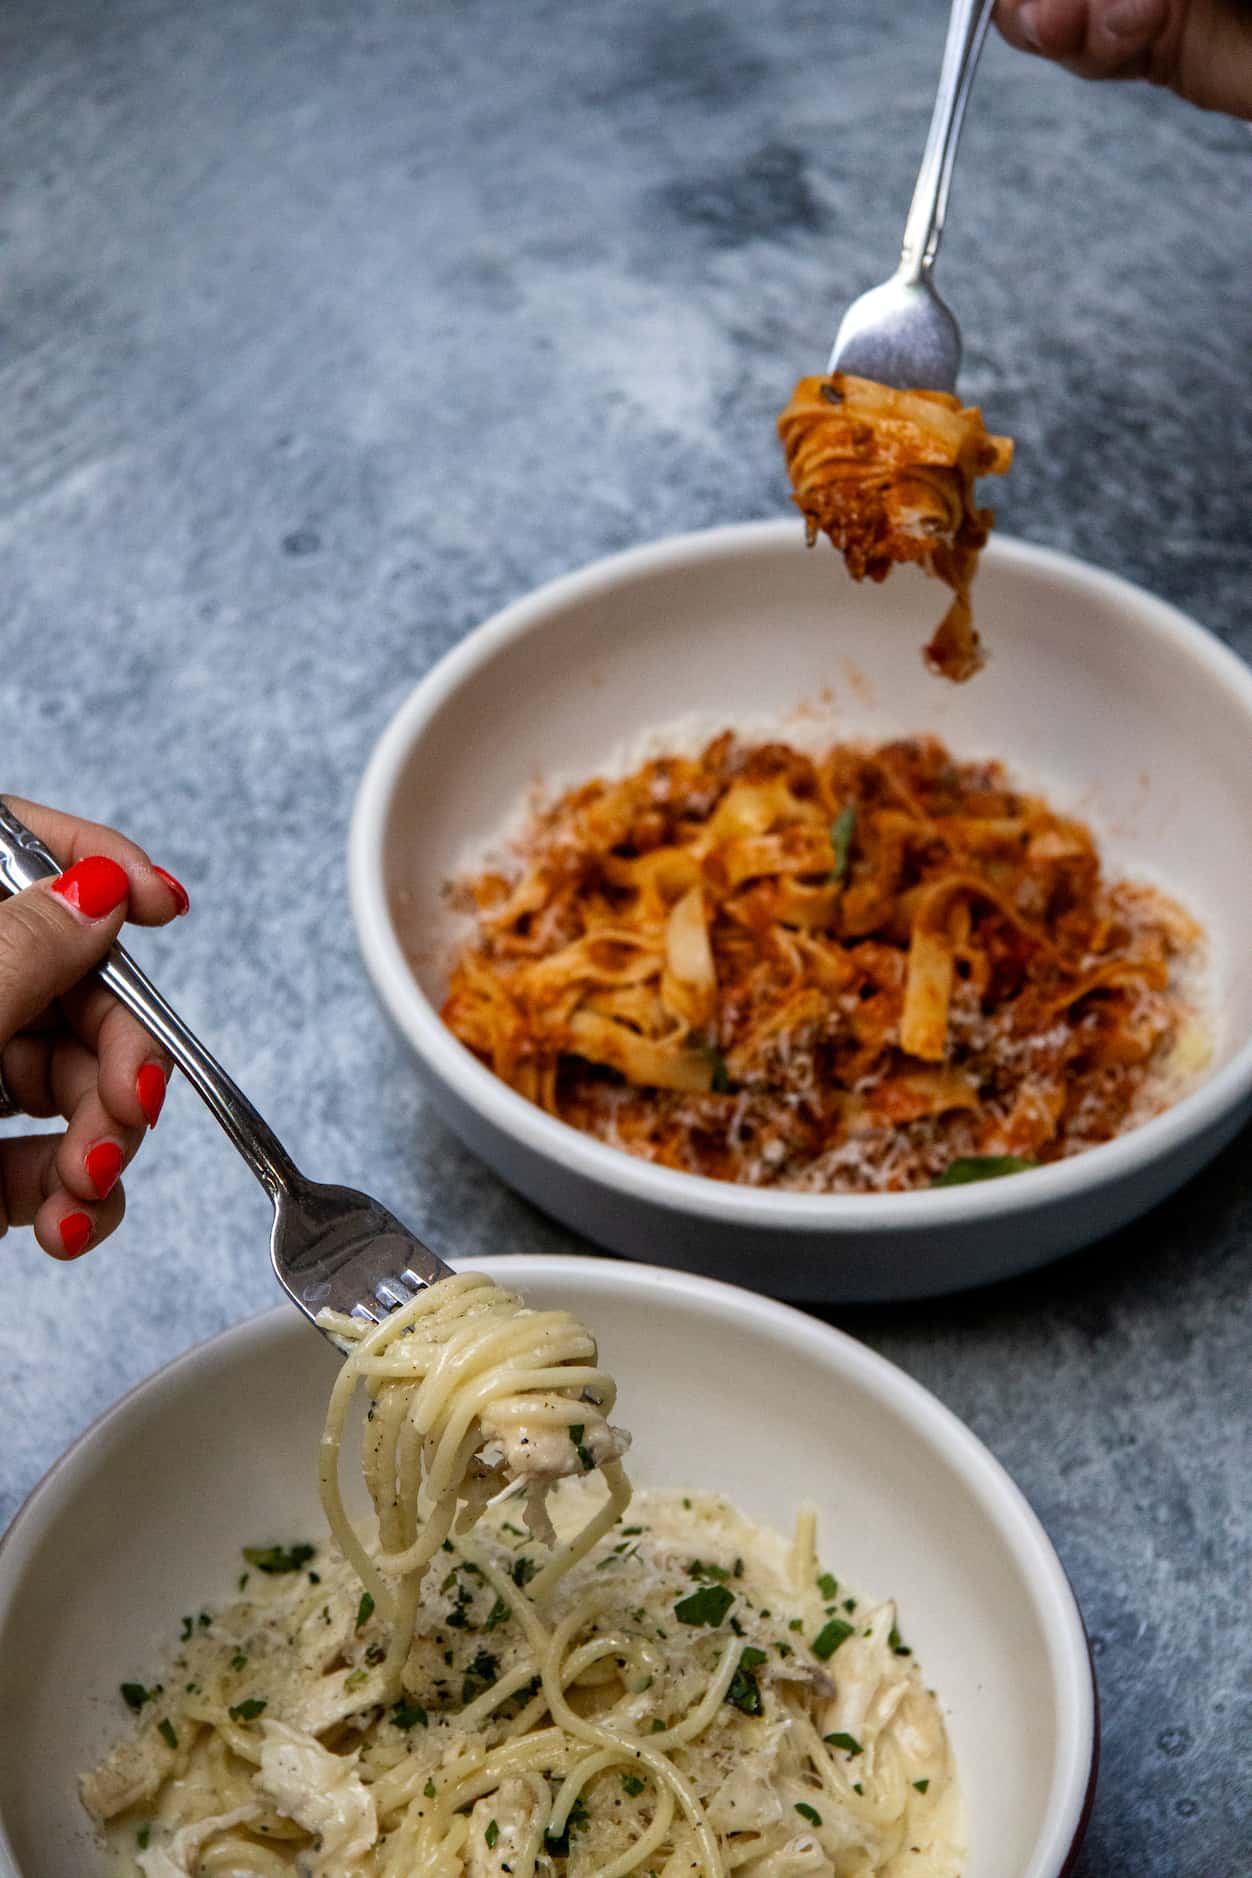 Pasta dishes at Dallas' new Culinary Dropout restaurant include Chicken Cacio e Pepe and...